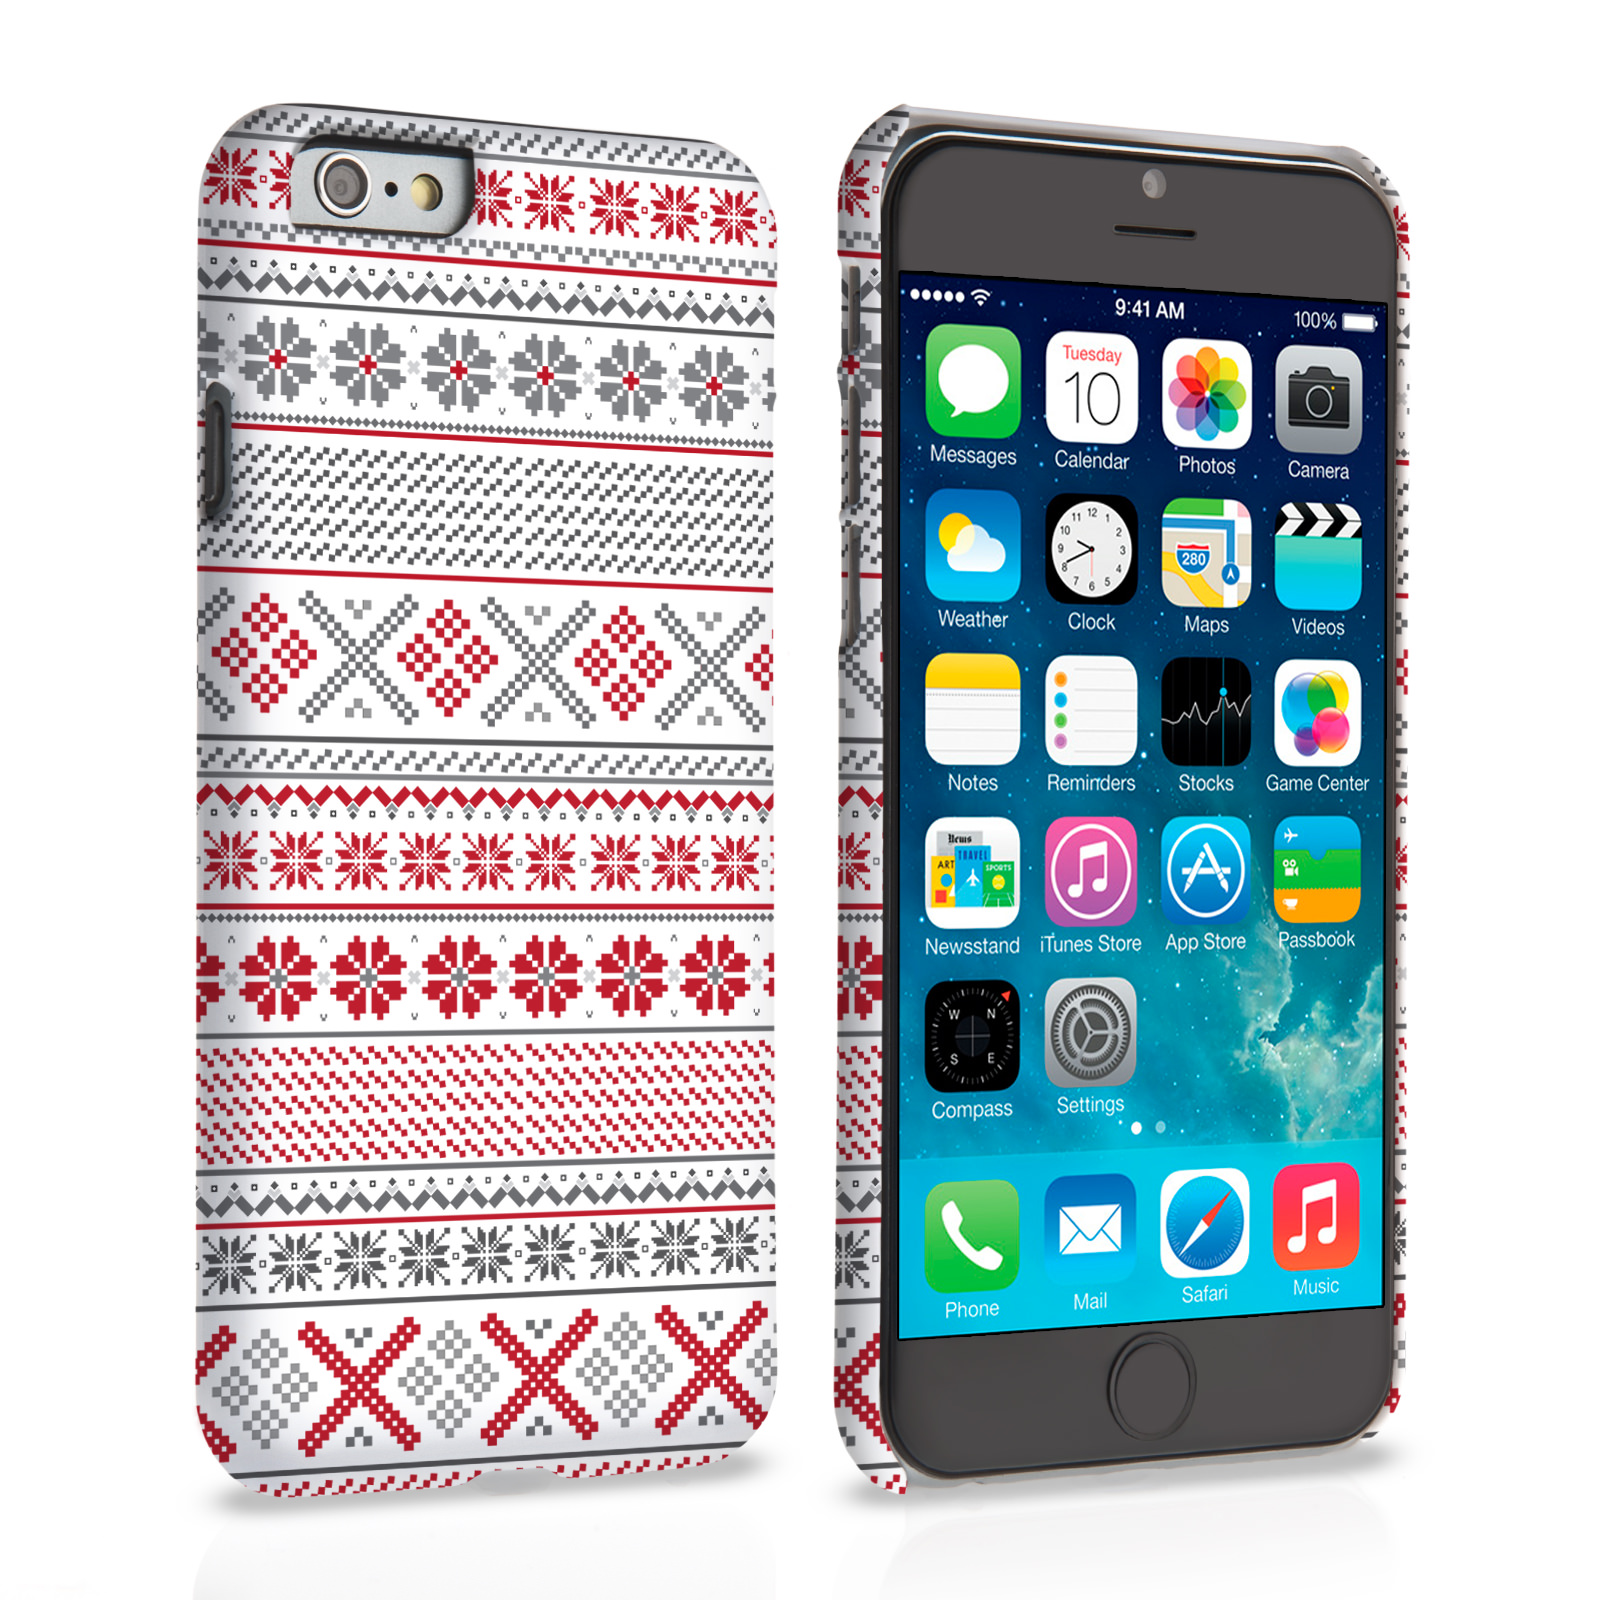 Caseflex iPhone 6 and 6s Case Fair Isle Cross Stitch Case - Grey / Red